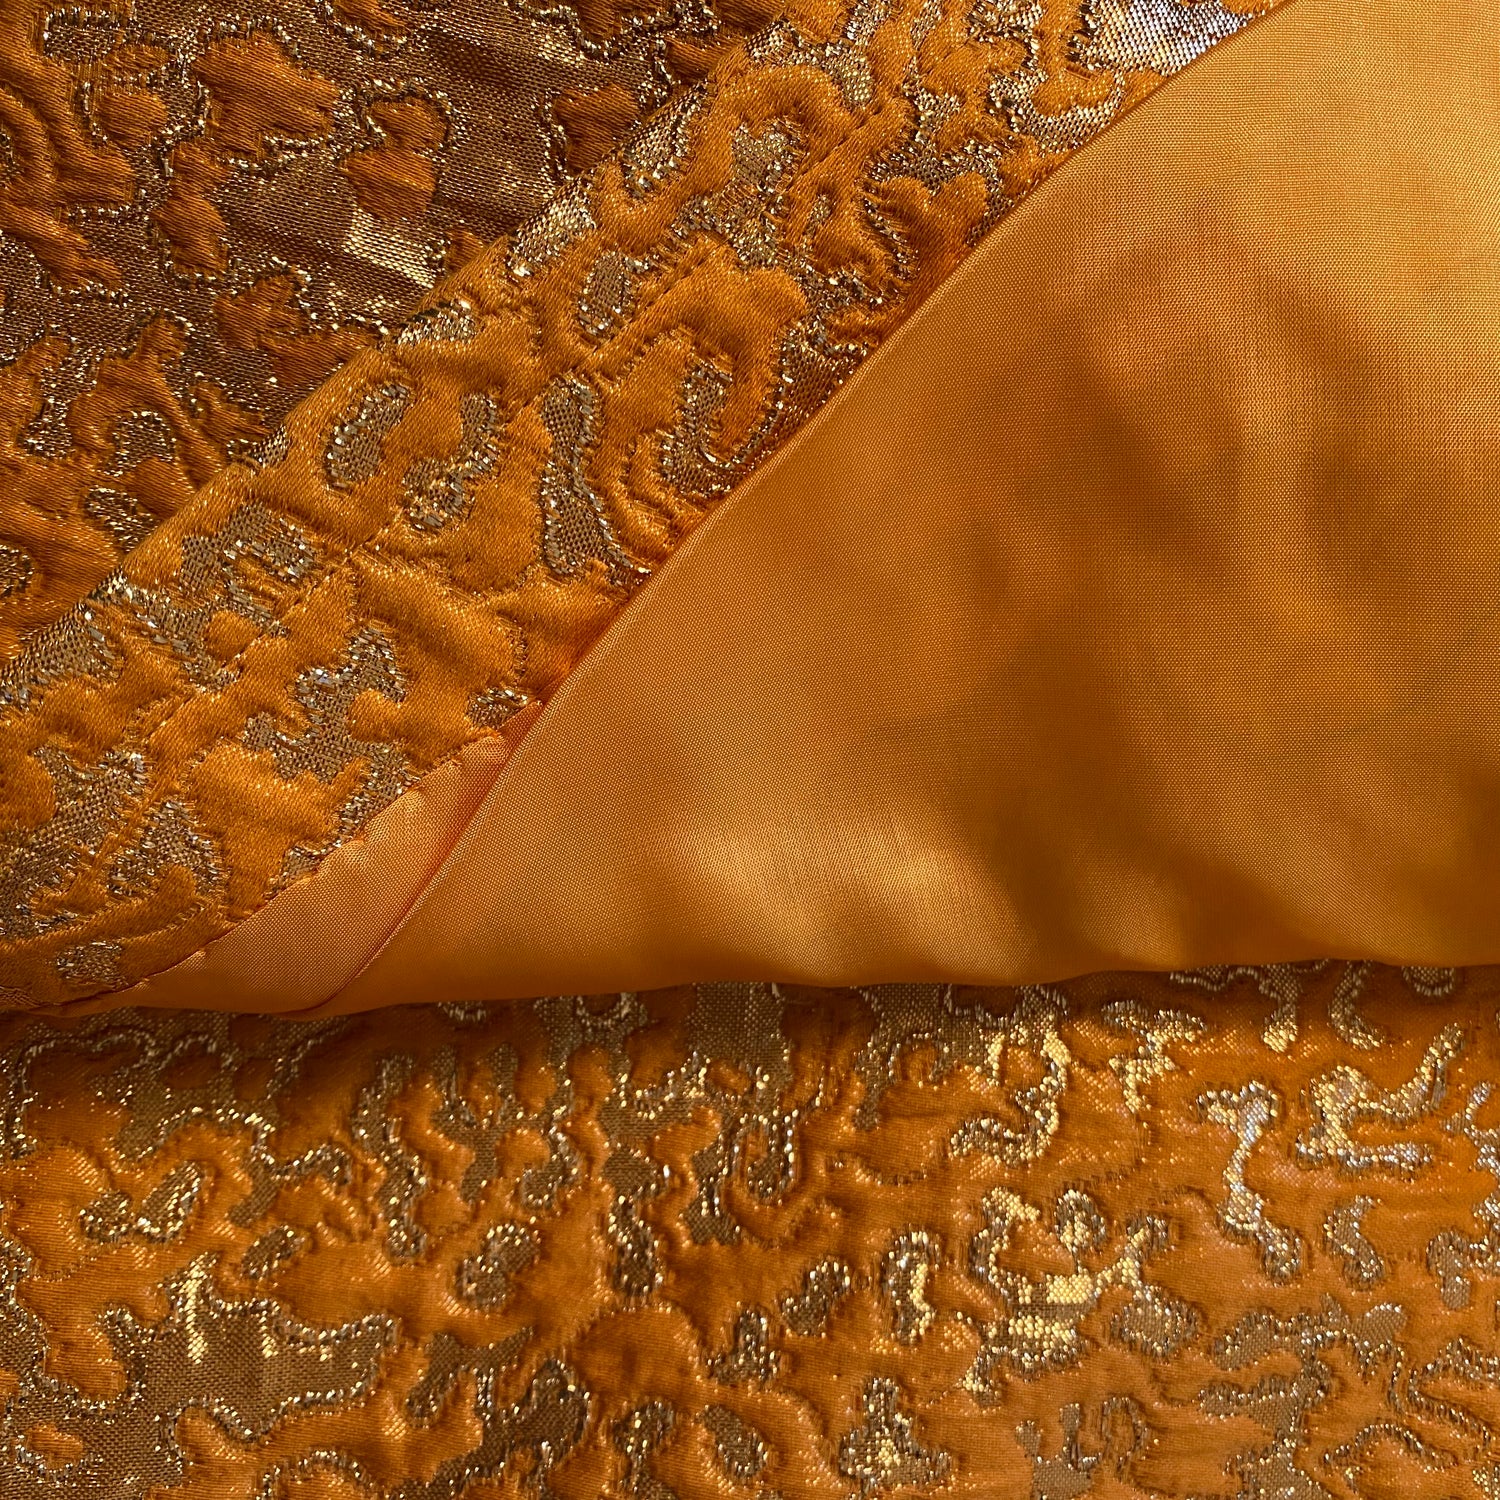 Yves Saint Laurent Rive Gauche gold orange vintage skirt - S - 1990s